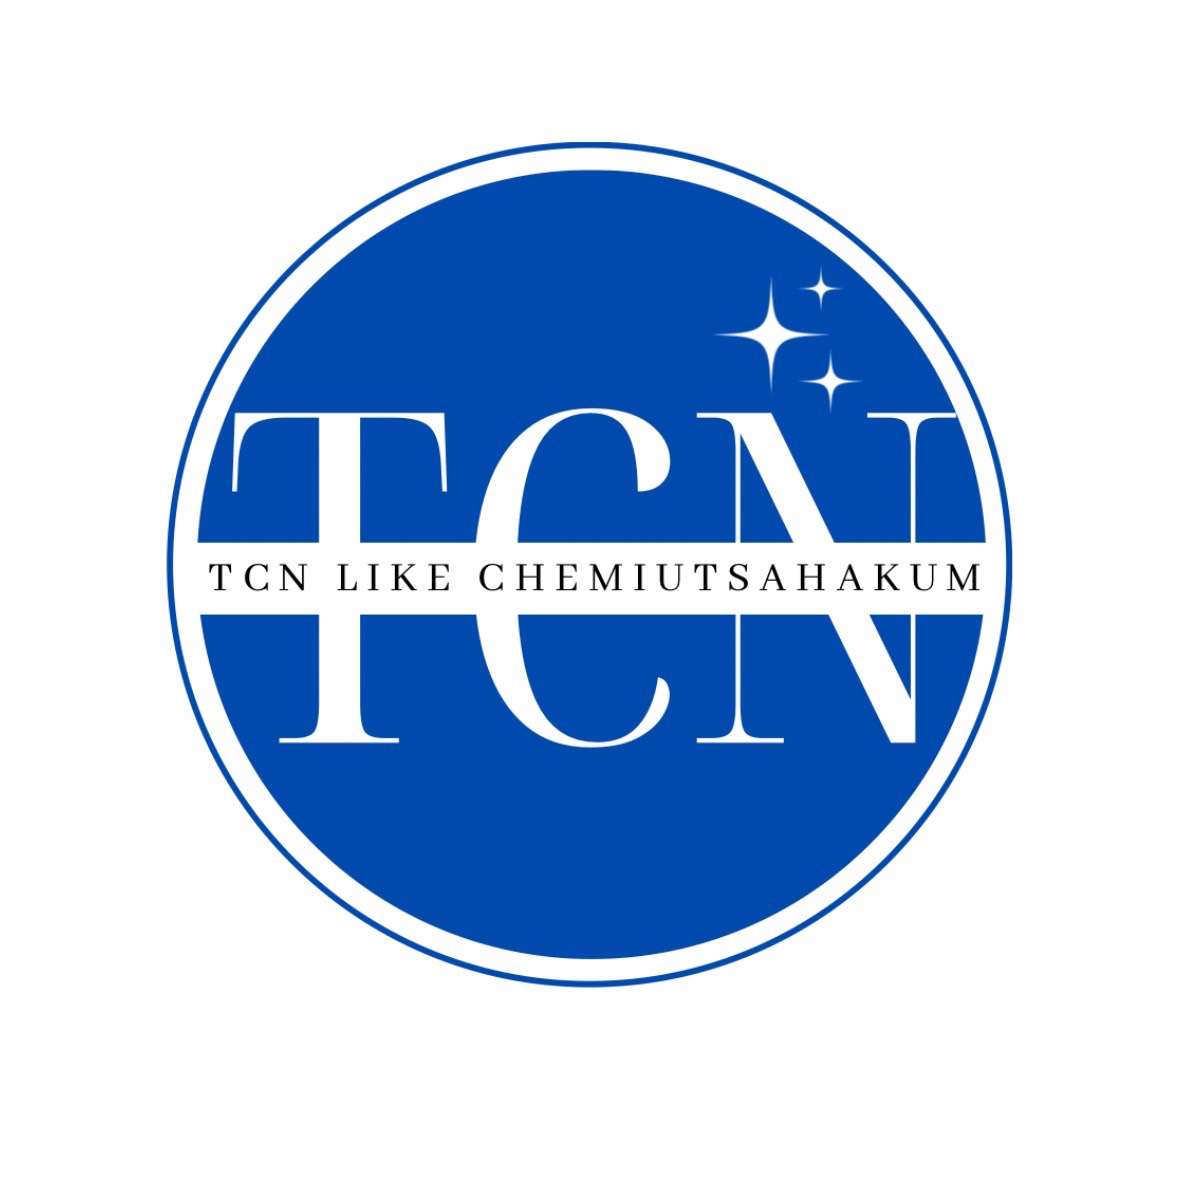 TCN LIKE CHEMIUTASAHAKUM CO ,LTD., บริษัท ทีซีเอ็น ไลค์ เคมีอุตสาหกรรม จำกัด